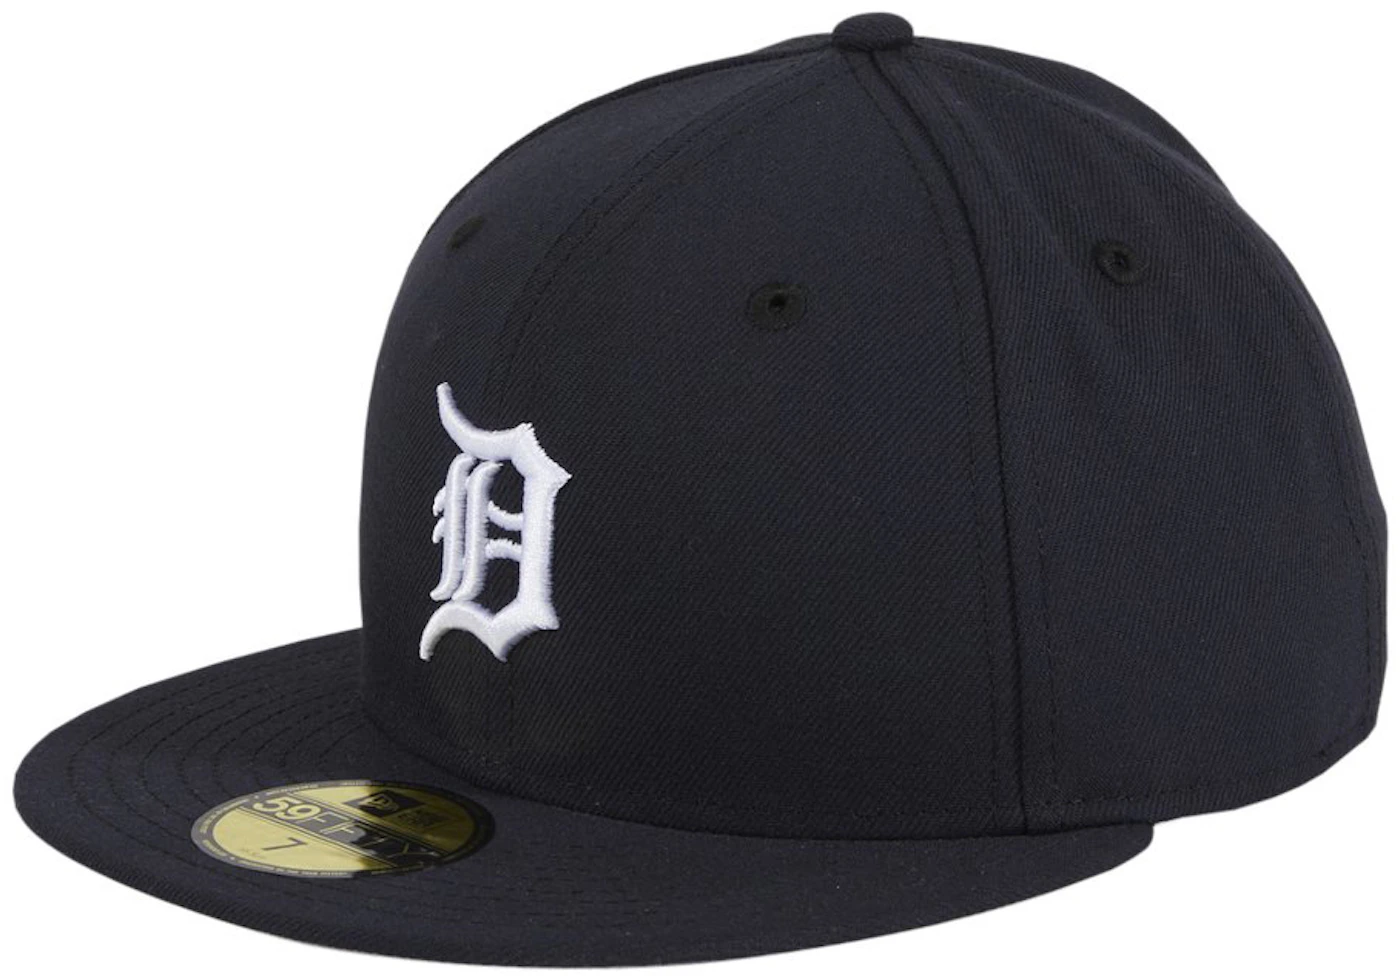 Caps - New Era Repreve 940 Detroit Tigers (black)